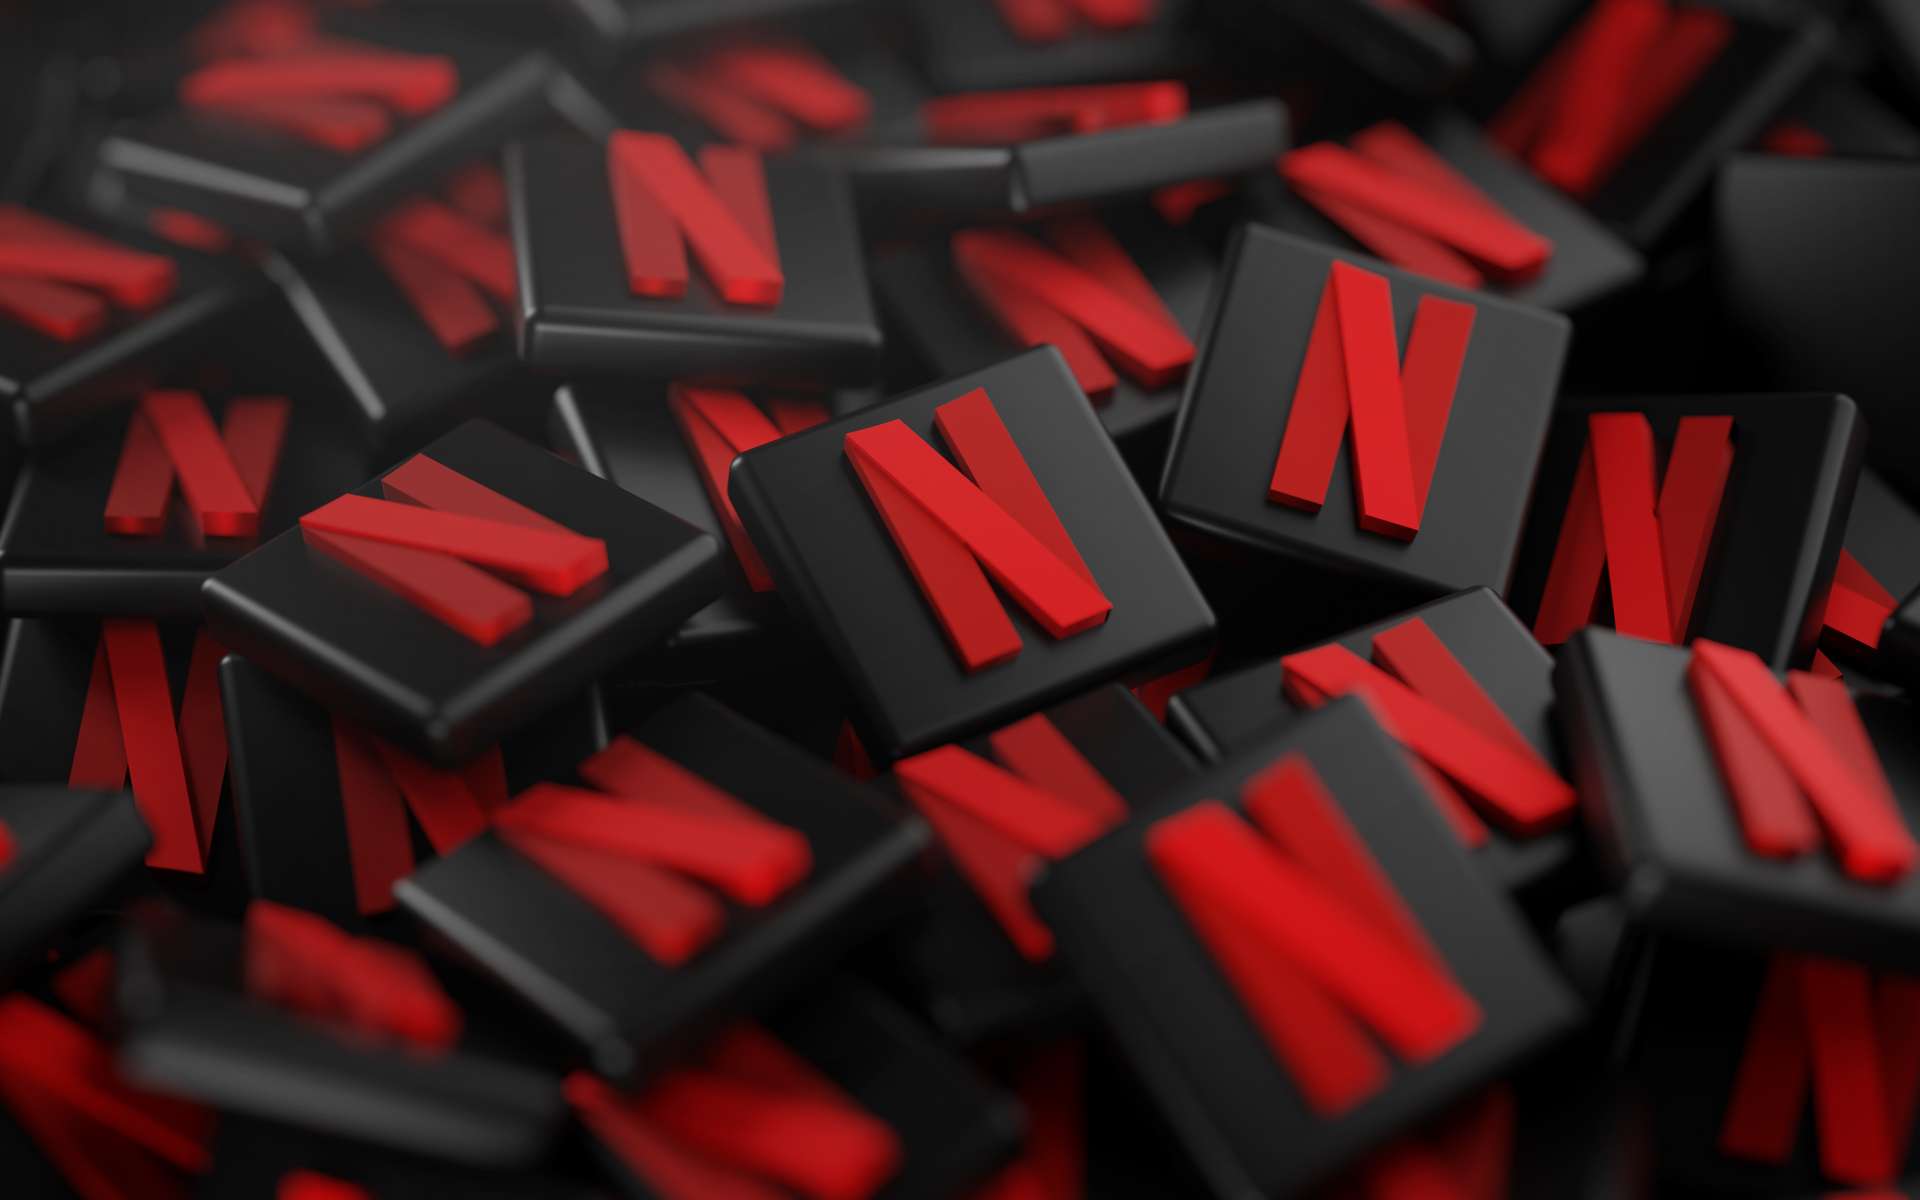 Le géant Netflix interdit l'accès à certaines séries américaines depuis la France. Les fournisseurs de VPN tentent de contourner la chose, mais bien souvent, Netflix repère les IP de tels services et les « blackliste ». © natanaelginting, Adobe Stock